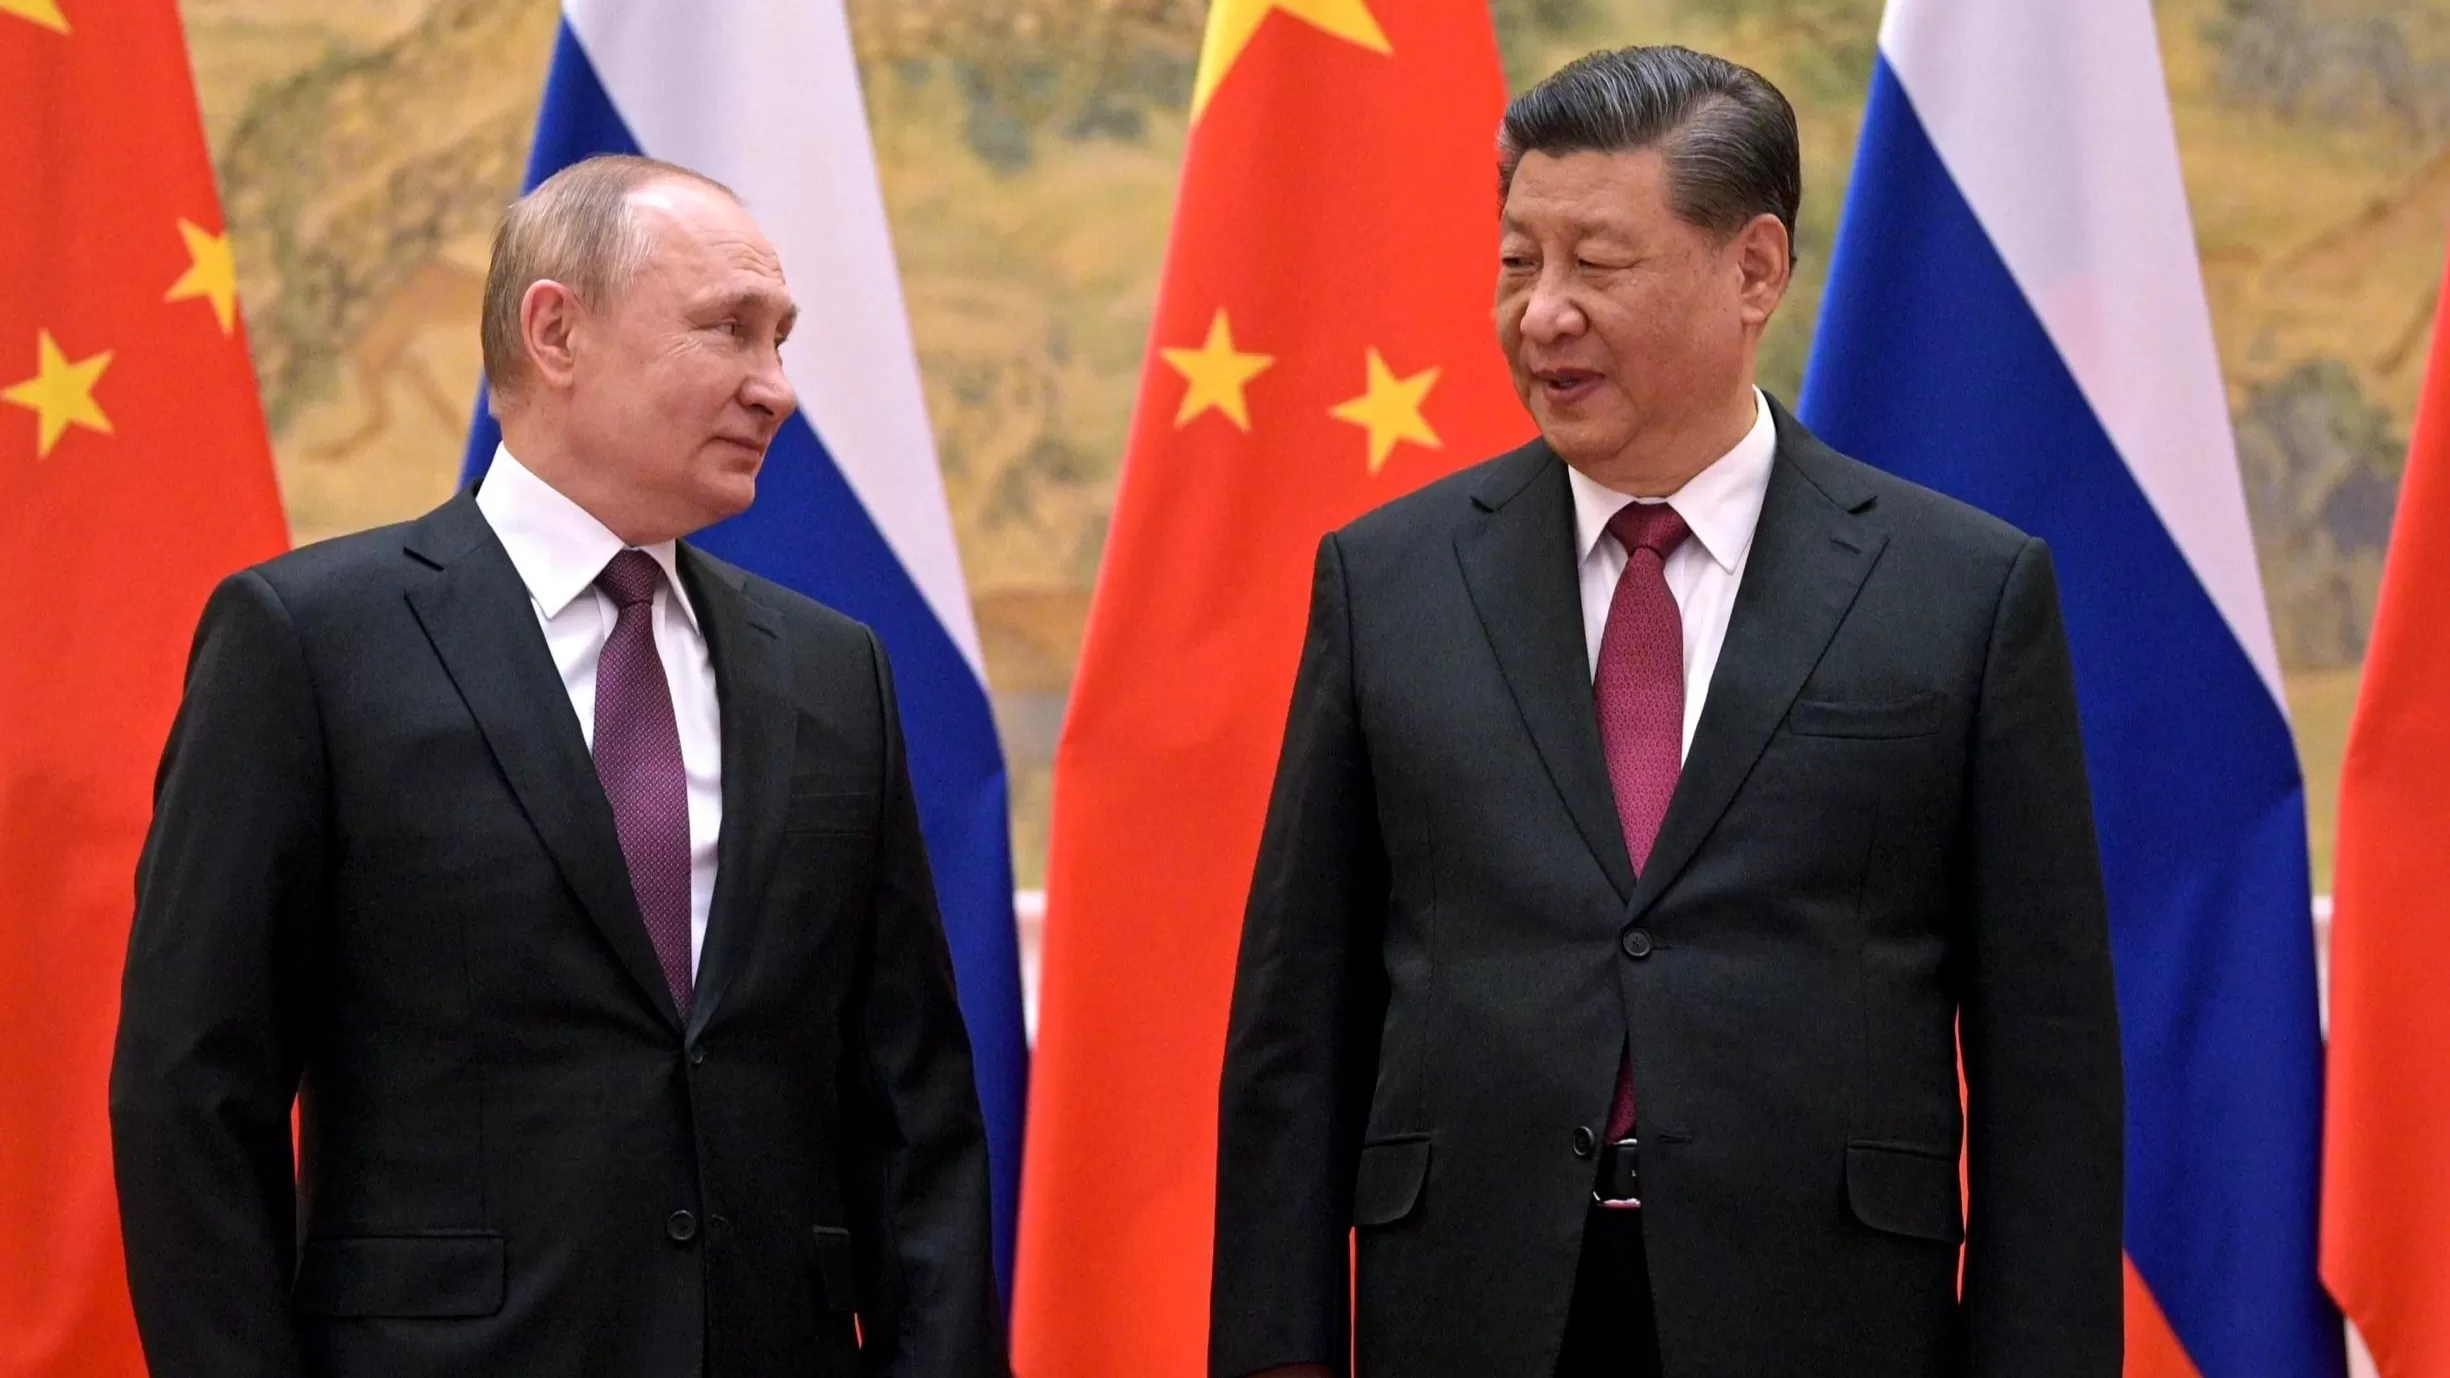 Չինաստանն ու Ռուսաստանը կարևոր դեր են խաղում միջազգային հարցերում. Սի Ծինփինը